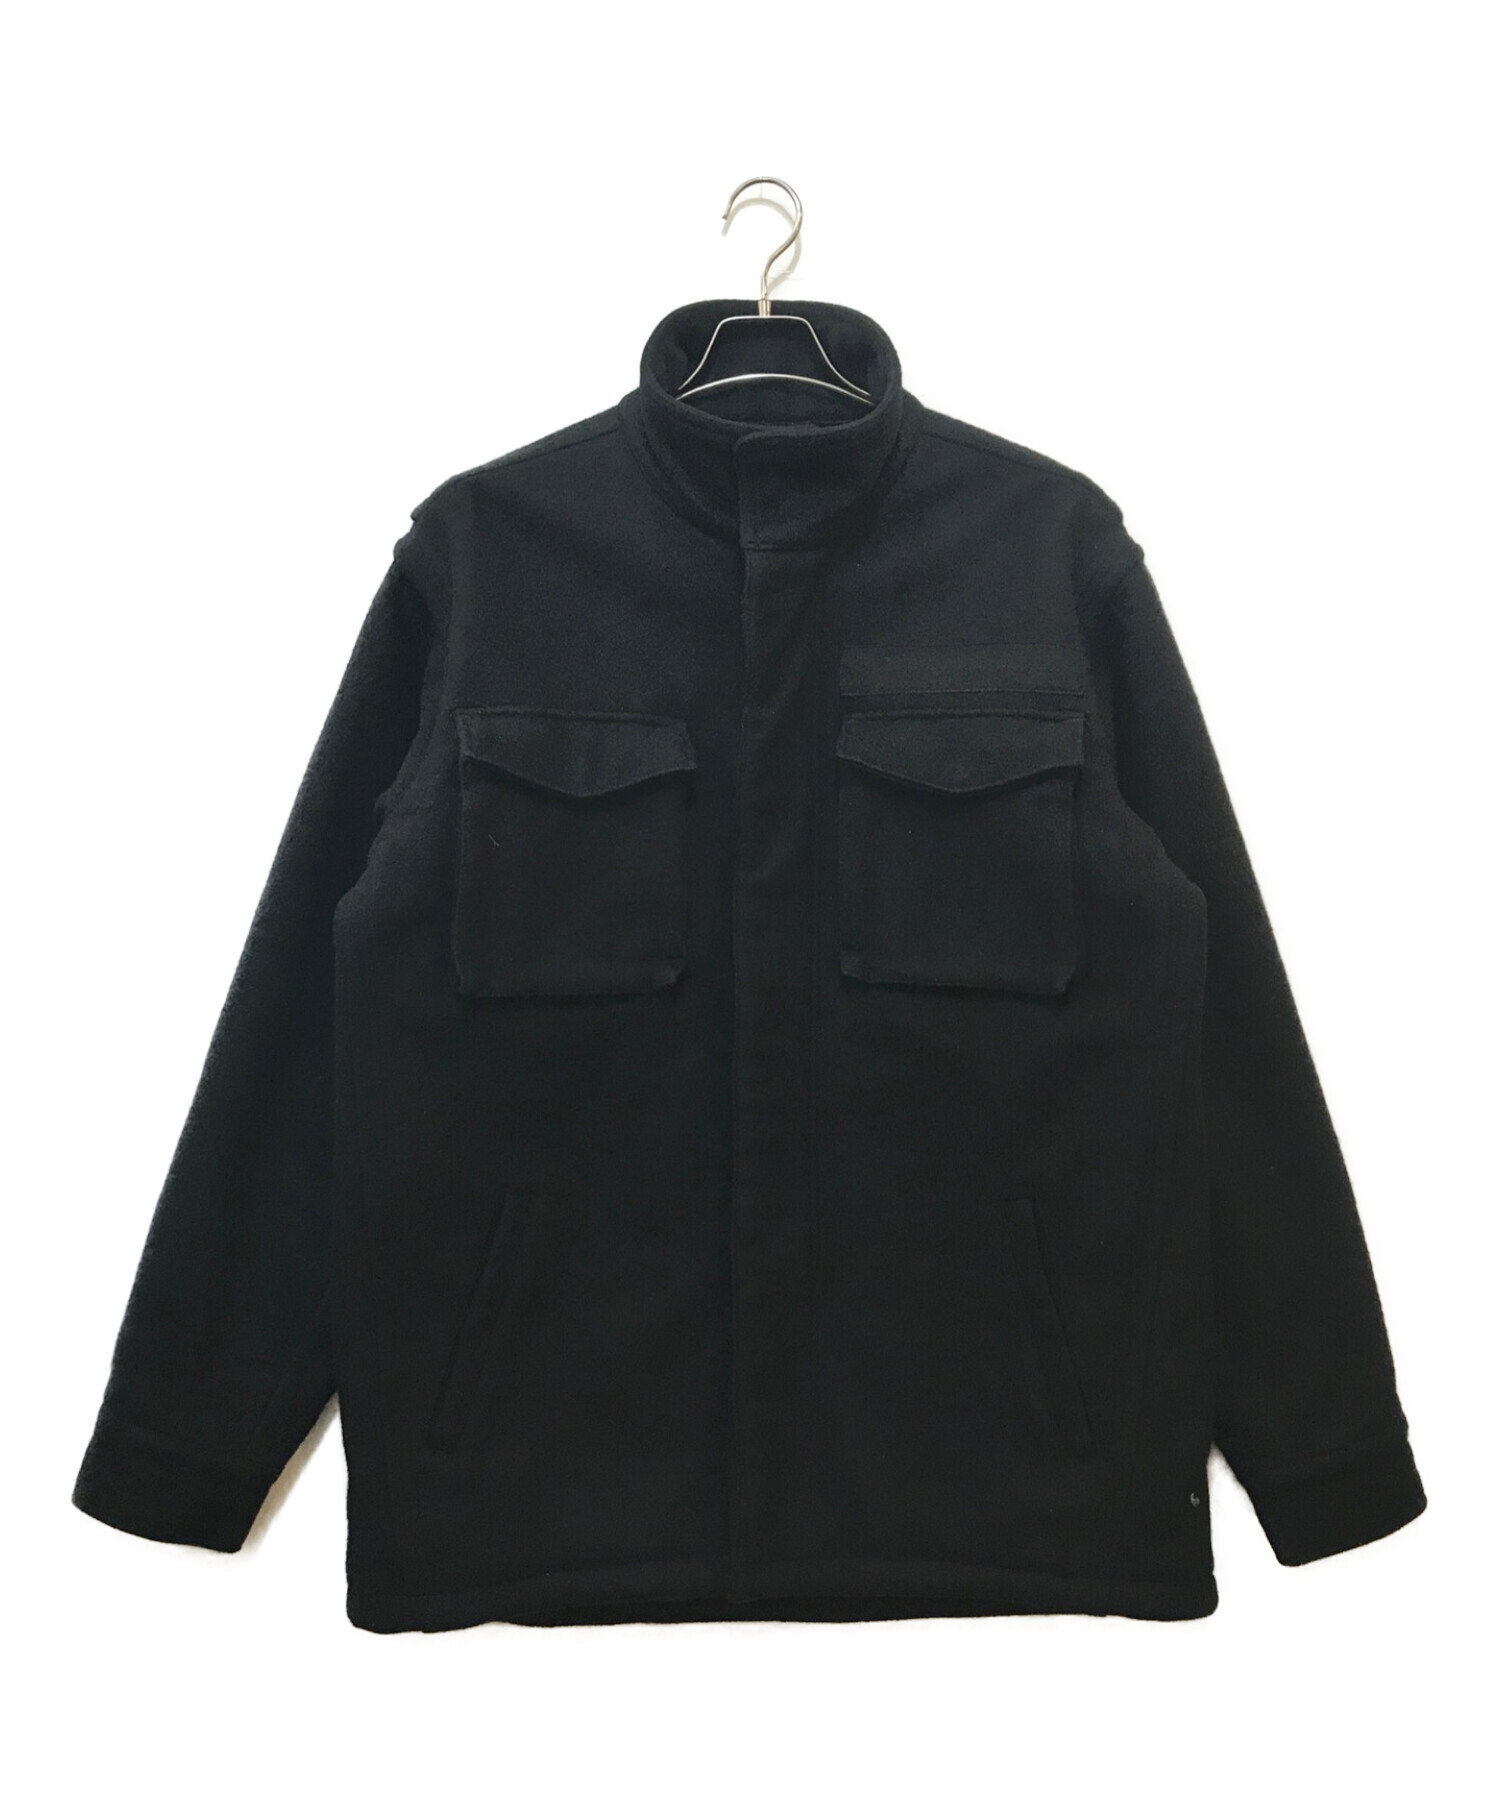 stussy (ステューシー) メルトンフィールドジャケット ブラック サイズ:XL